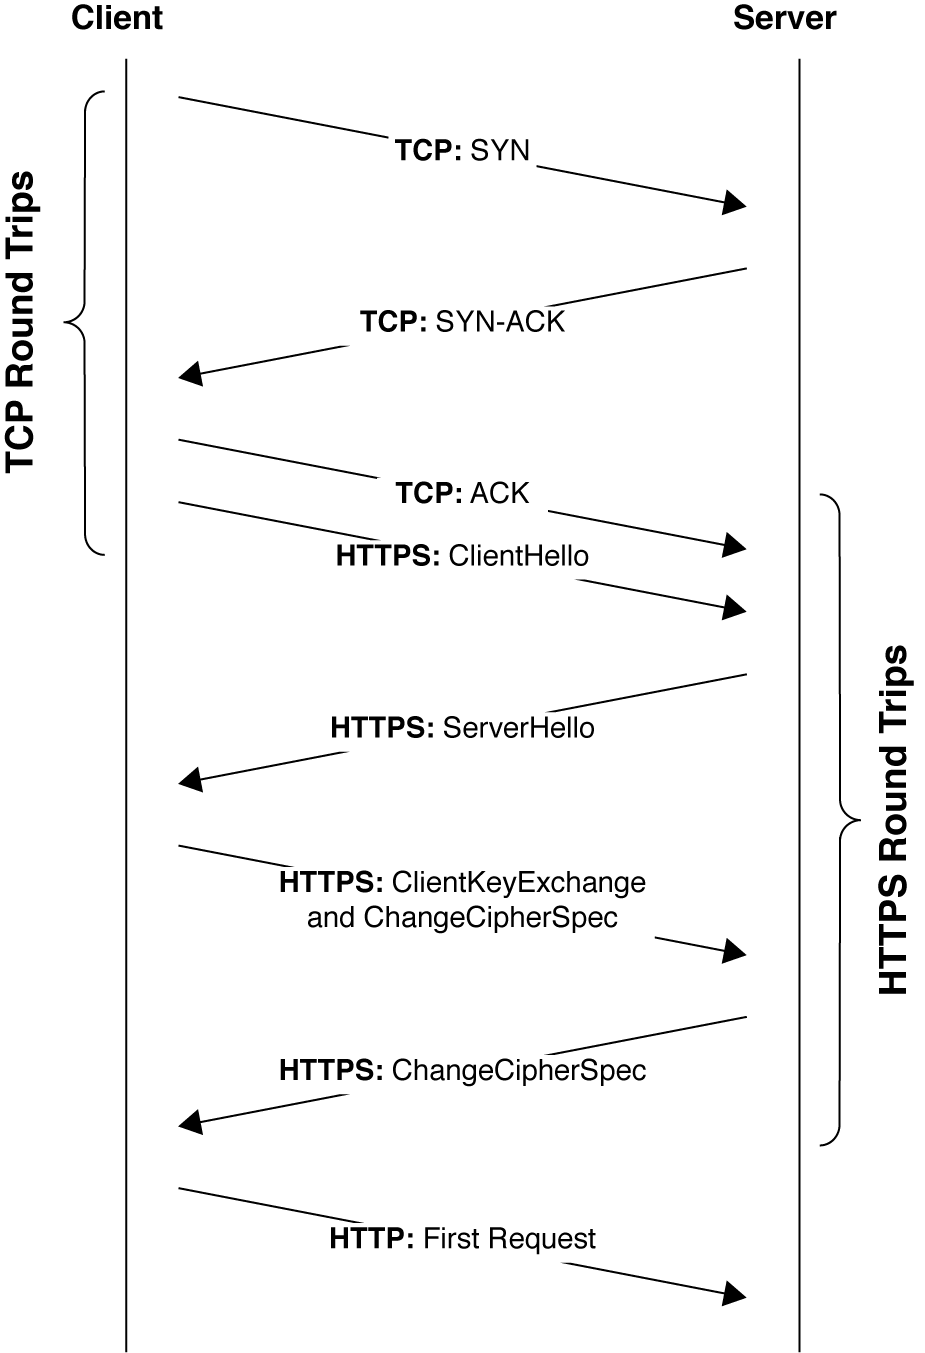 The TCP and HTTPS handshake